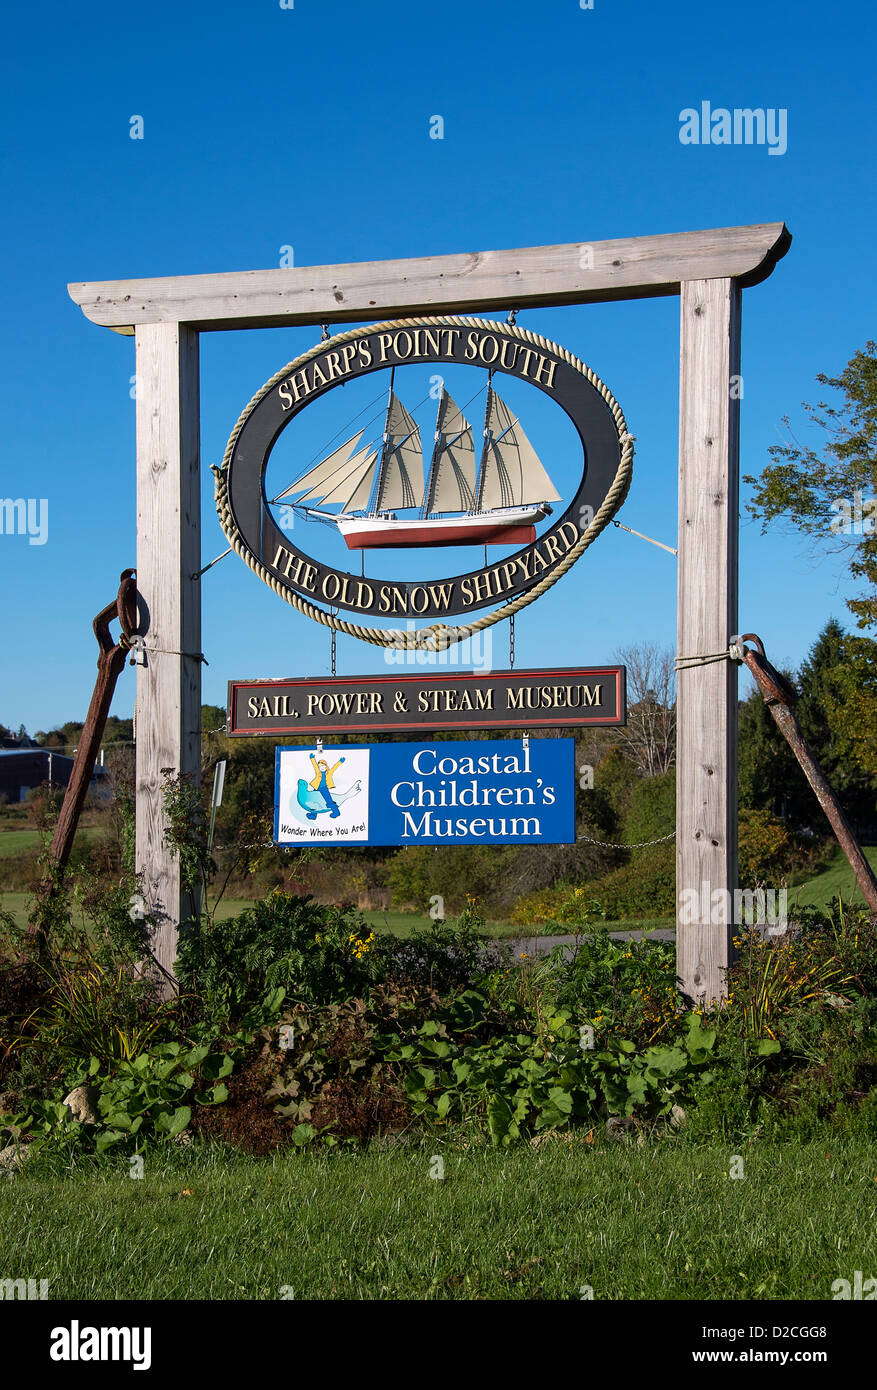 Les zones côtières childrens museum, Rockland, Maine, USA Banque D'Images